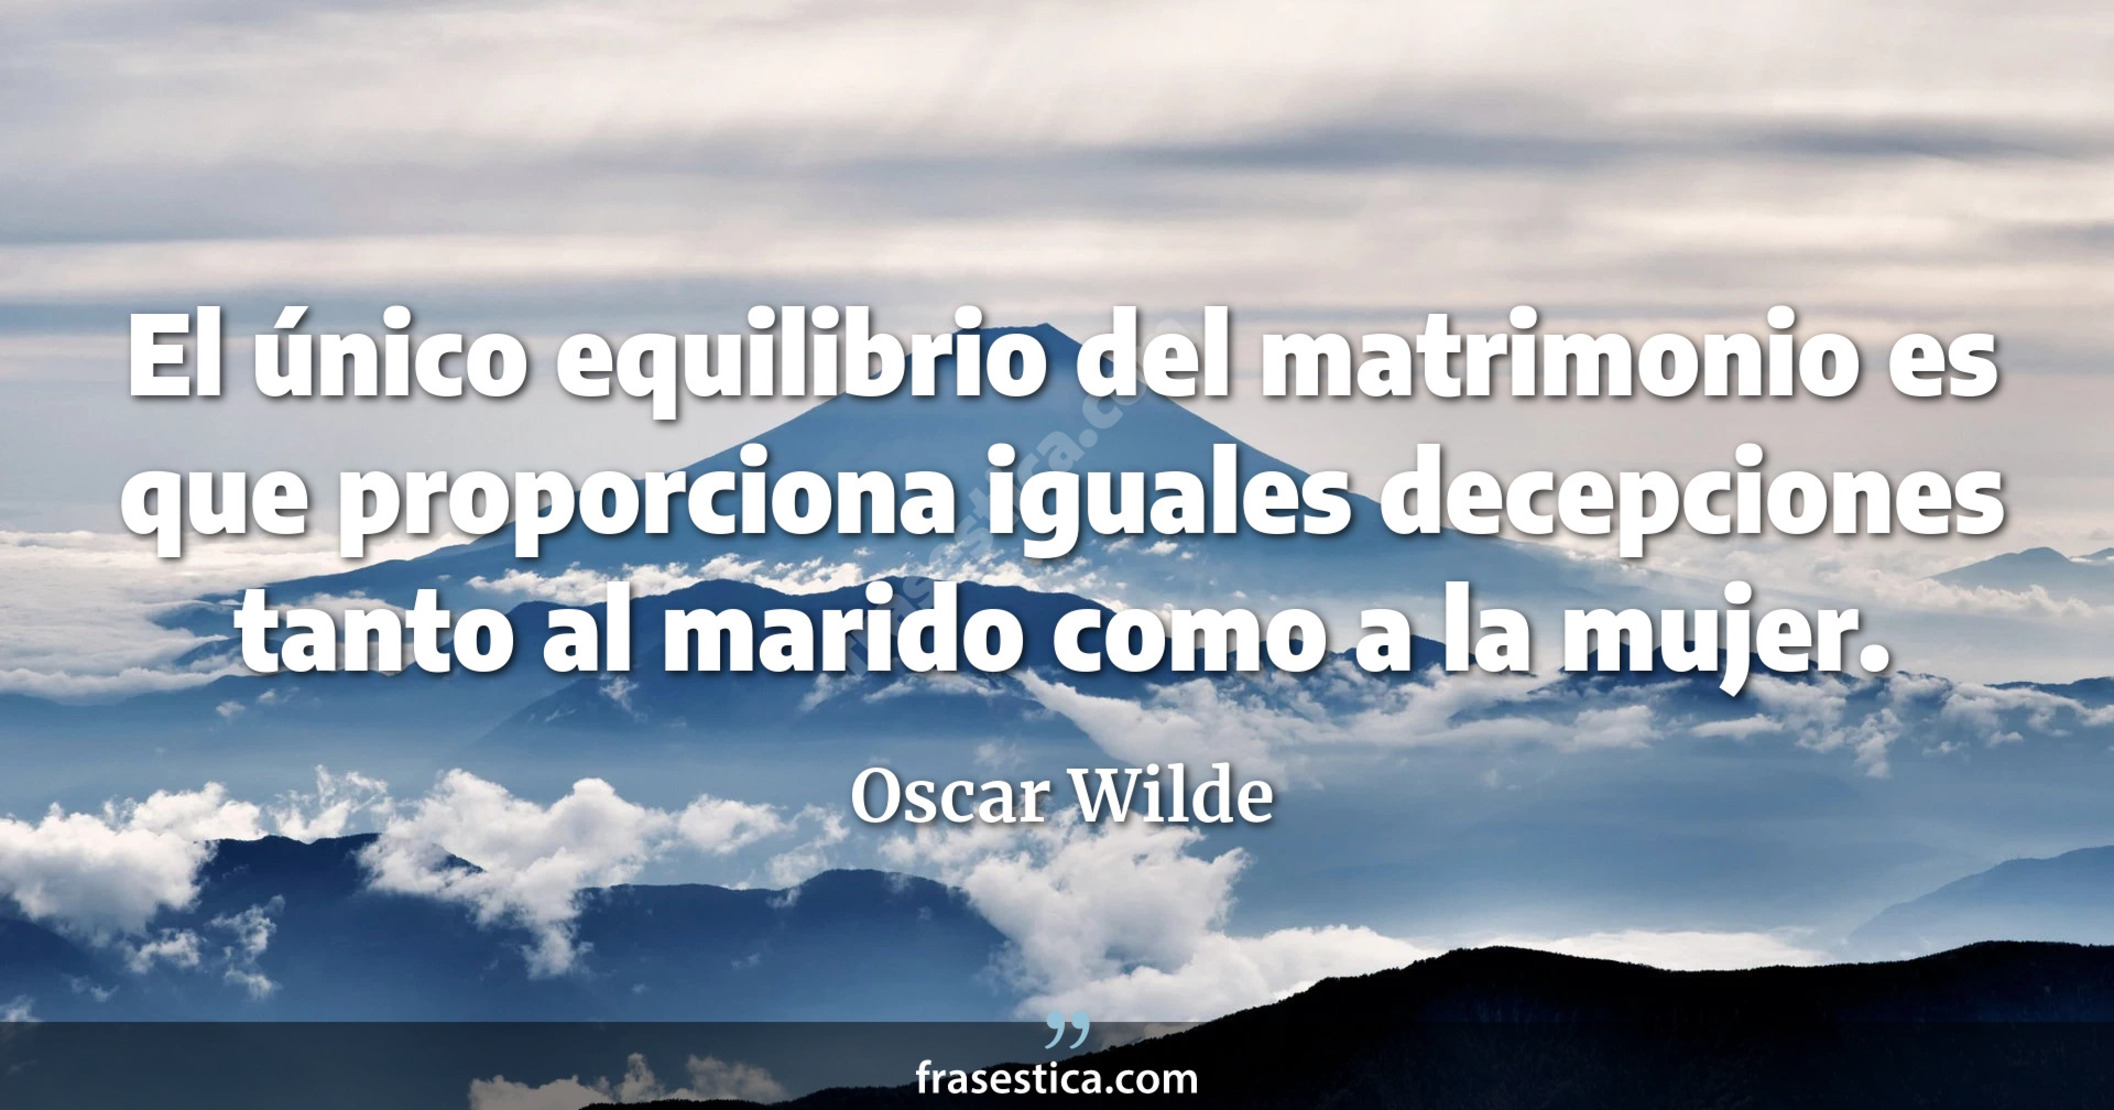 El único equilibrio del matrimonio es que proporciona iguales decepciones tanto al marido como a la mujer.  - Oscar Wilde